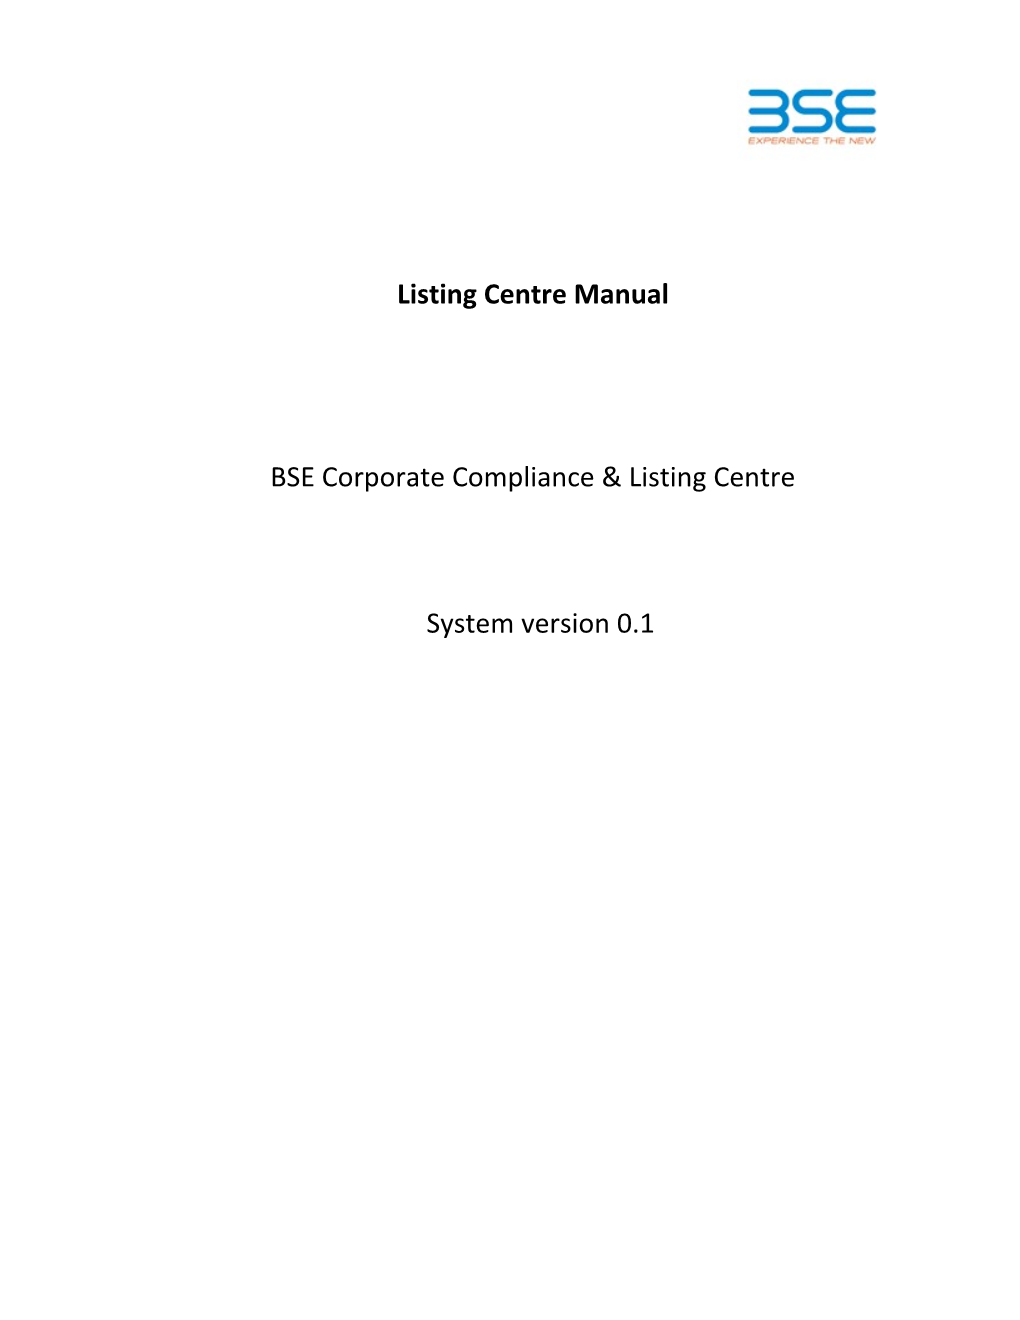 Eboss - User Manual